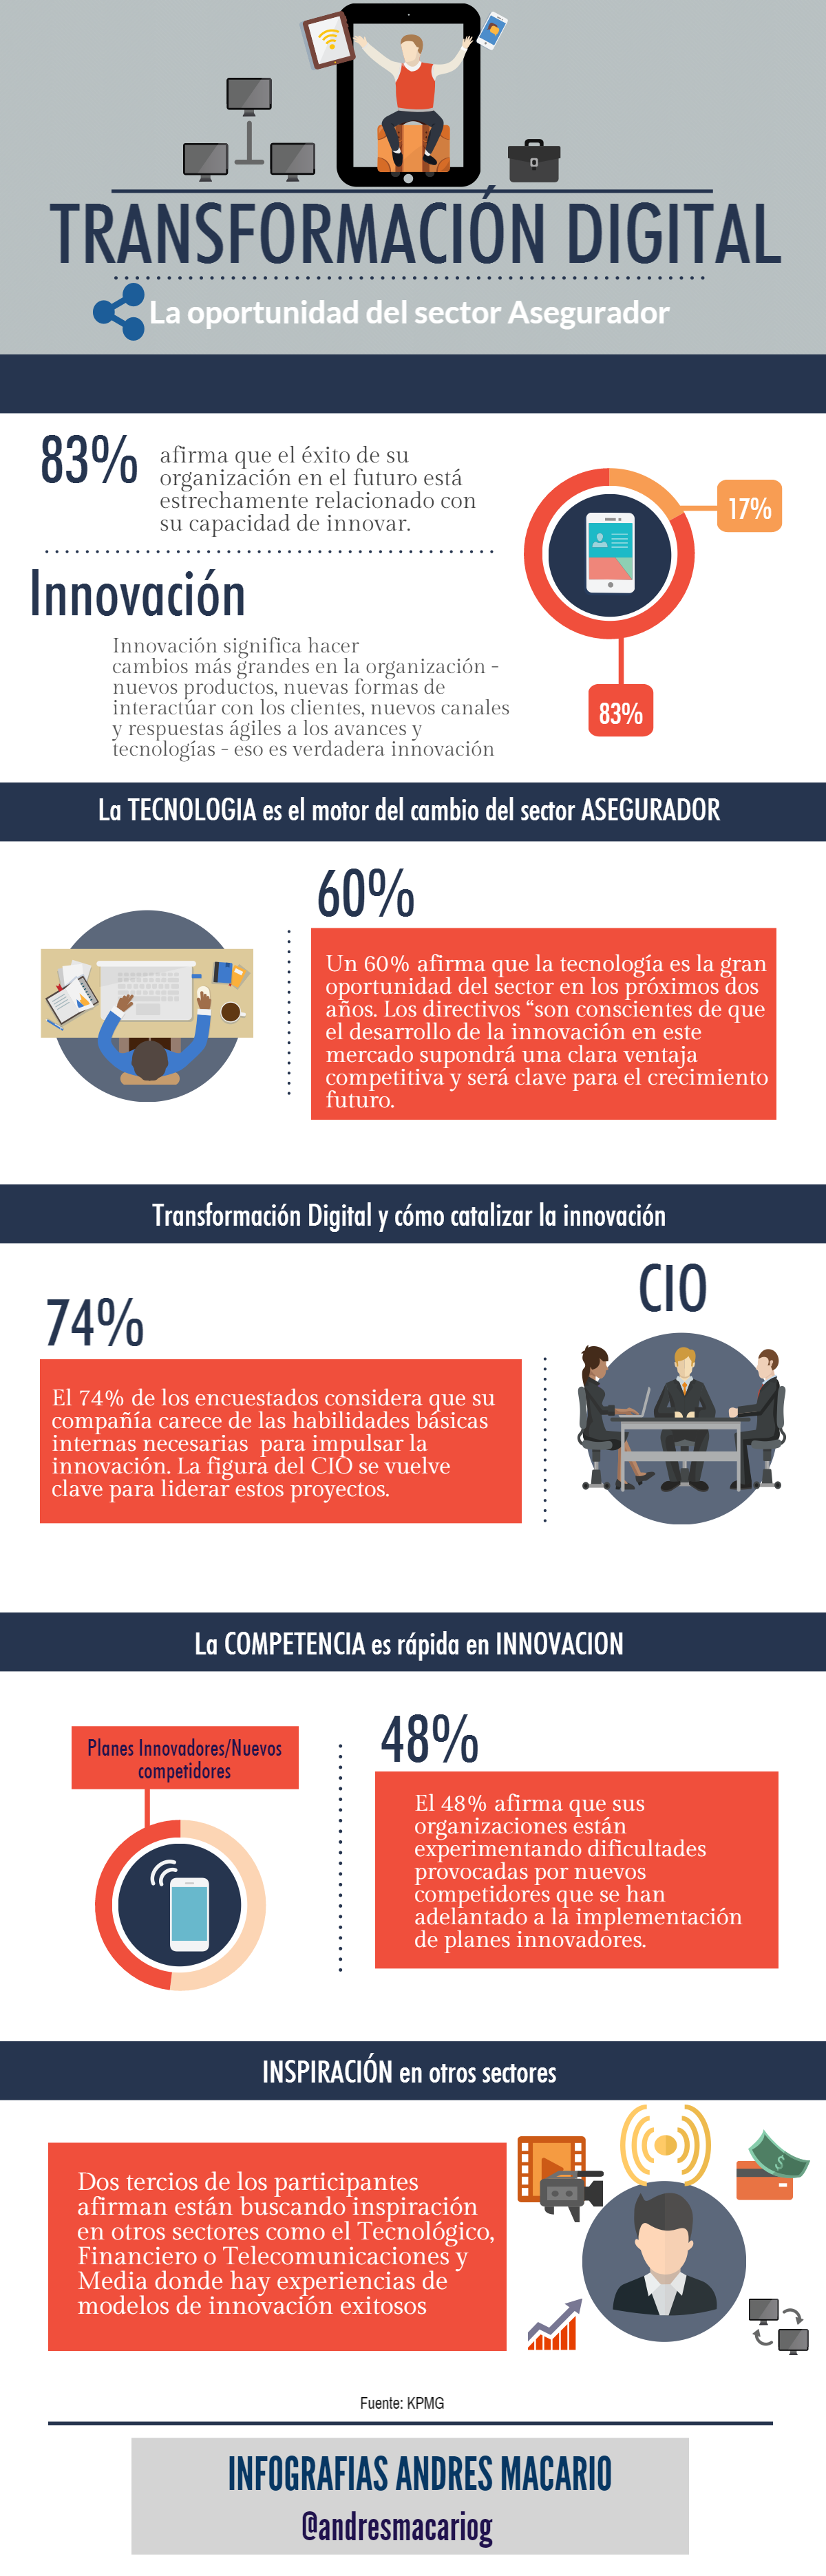 Transformacion Digital, oportunidad del sector Asegurador -infografia Andres Macario